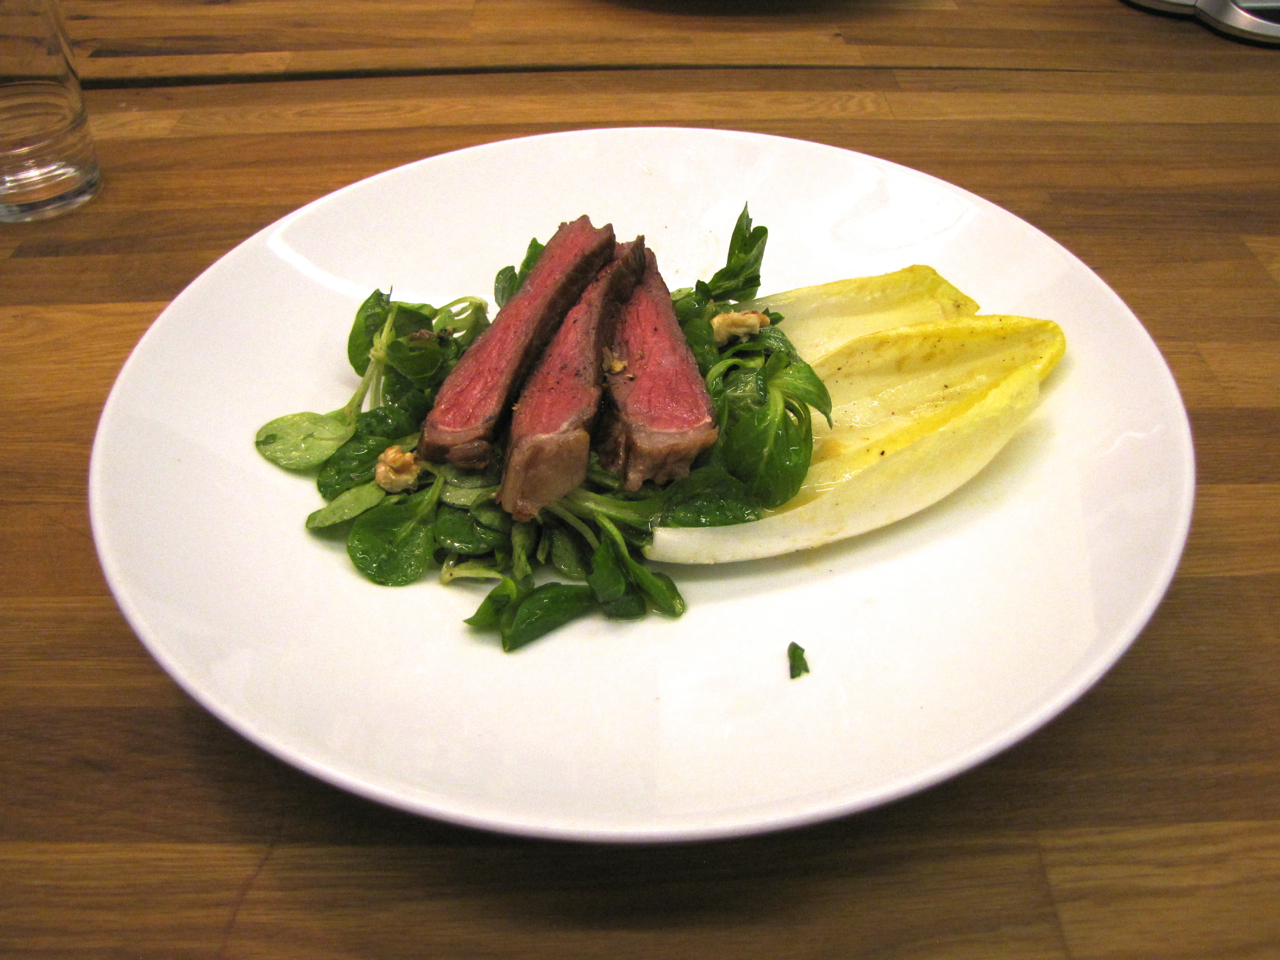 Steak salad, as prepared using Cinder.